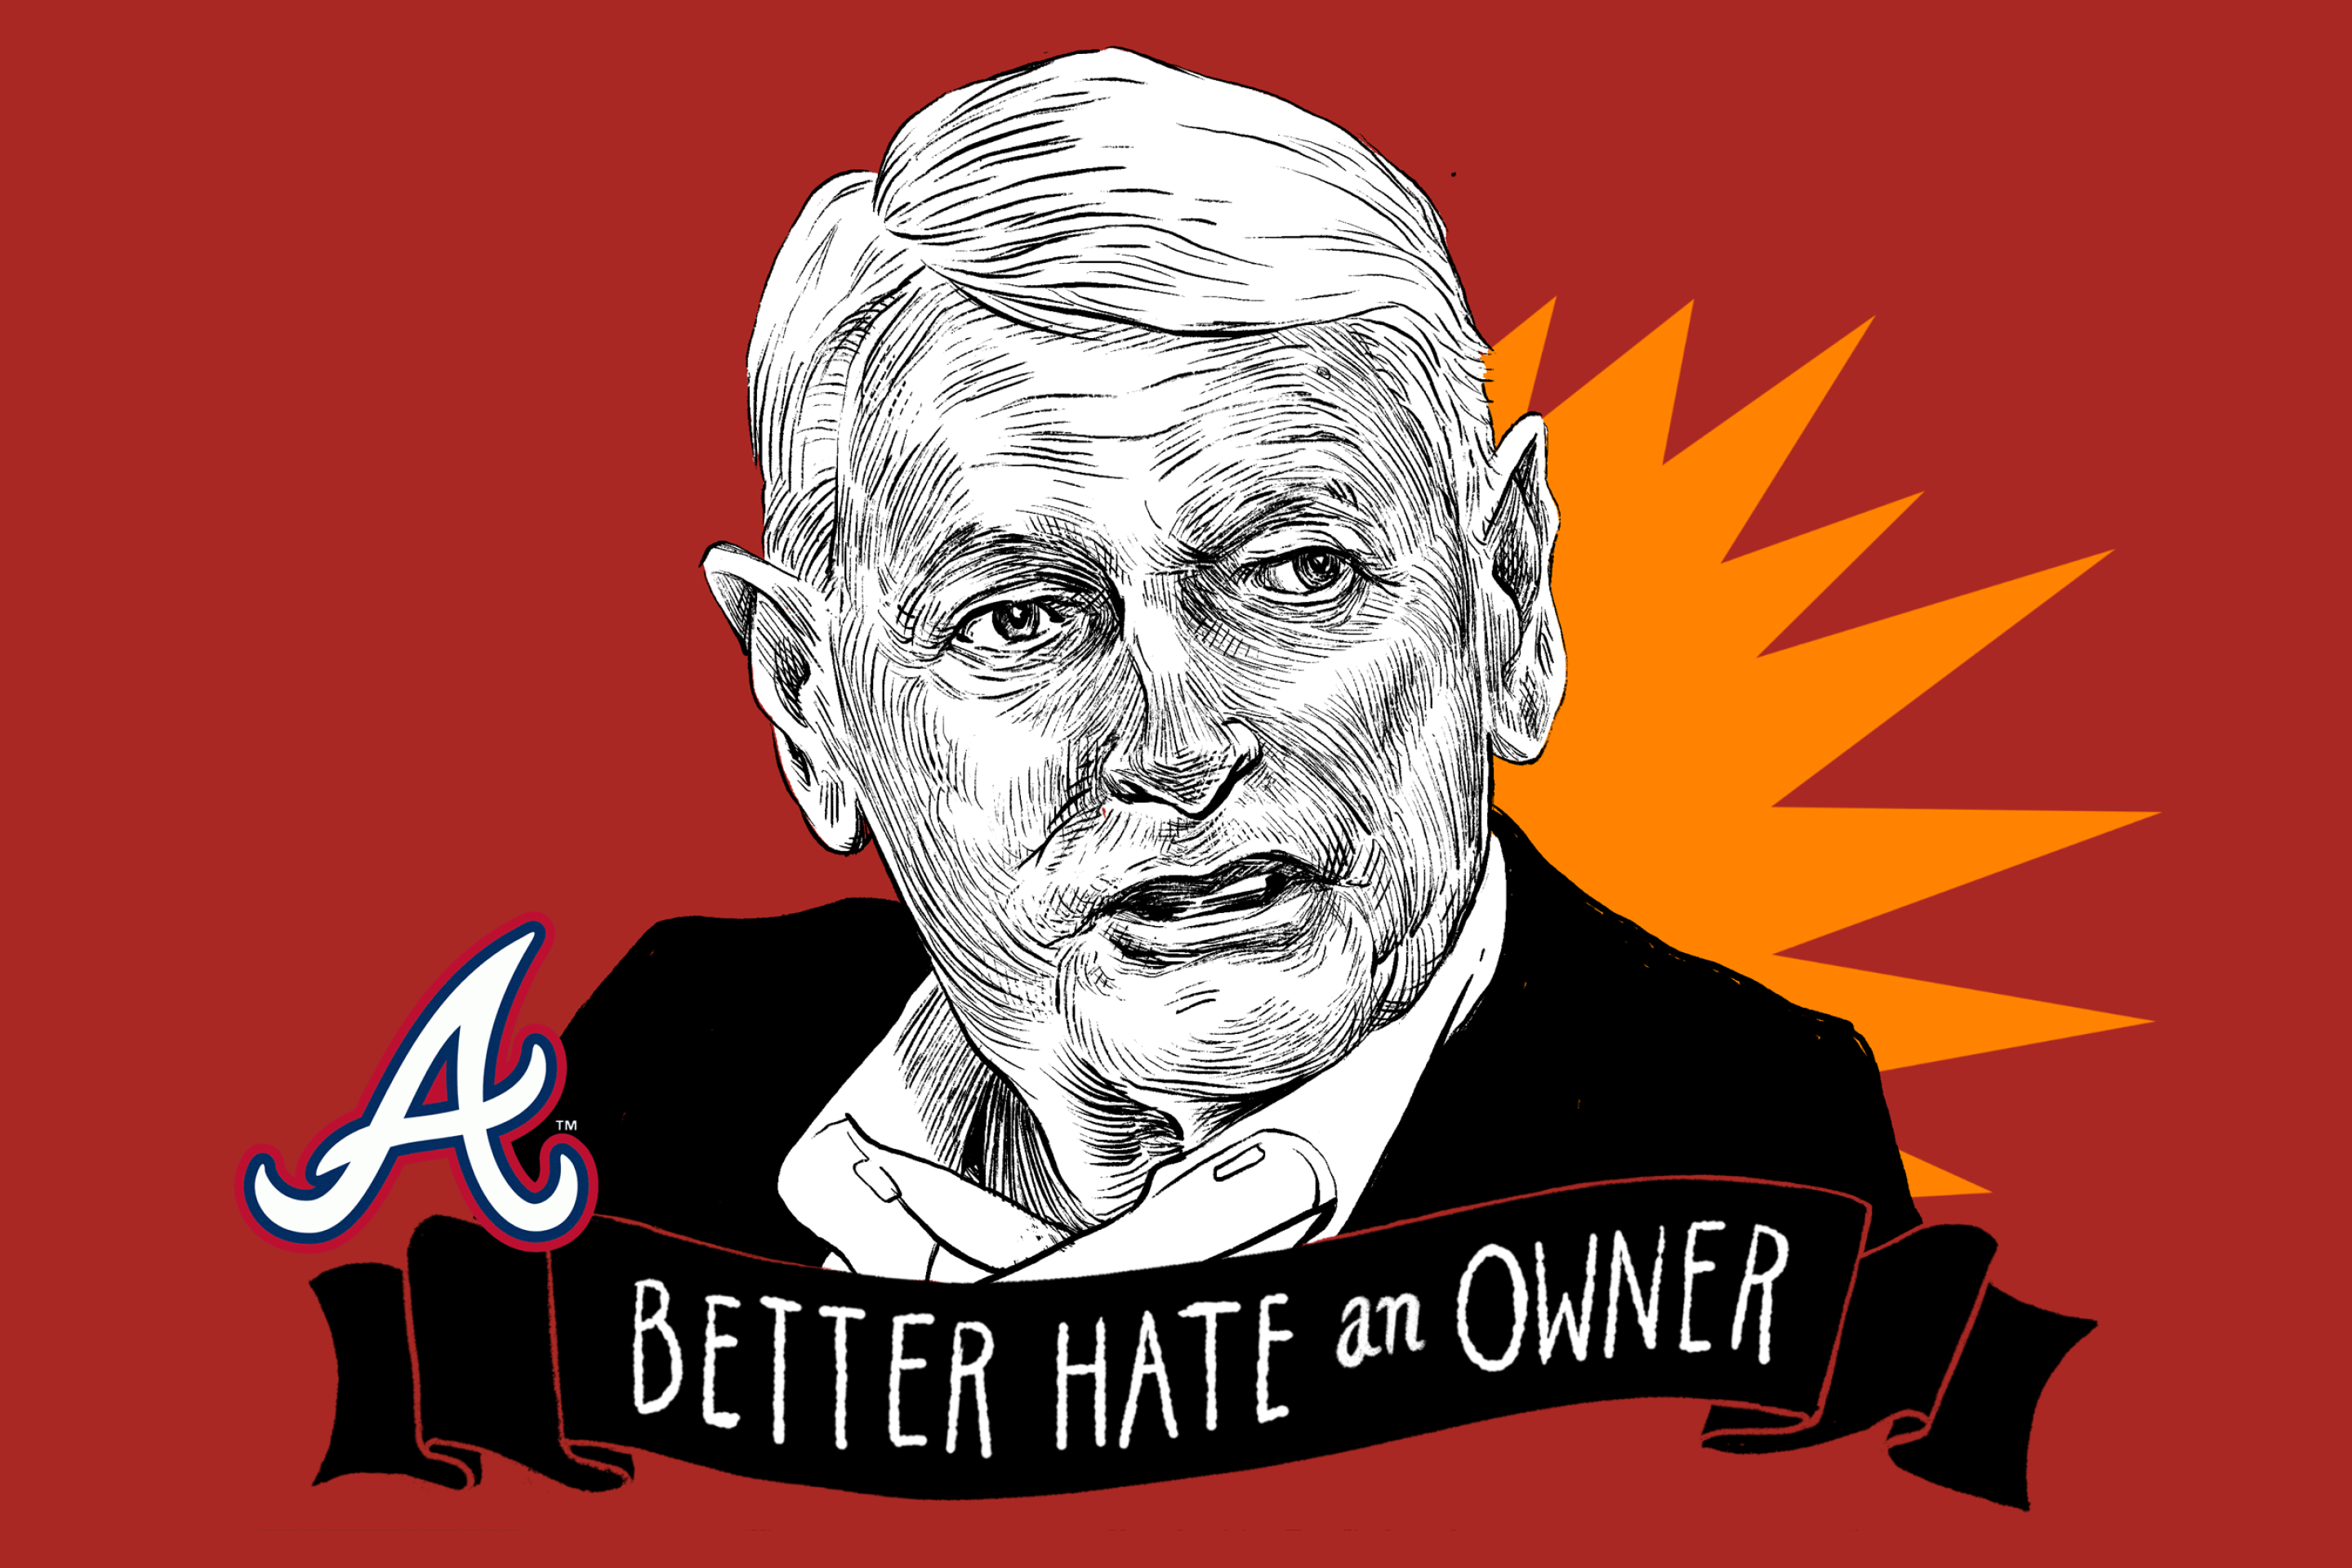 An illustration of Braves owner John Malone.